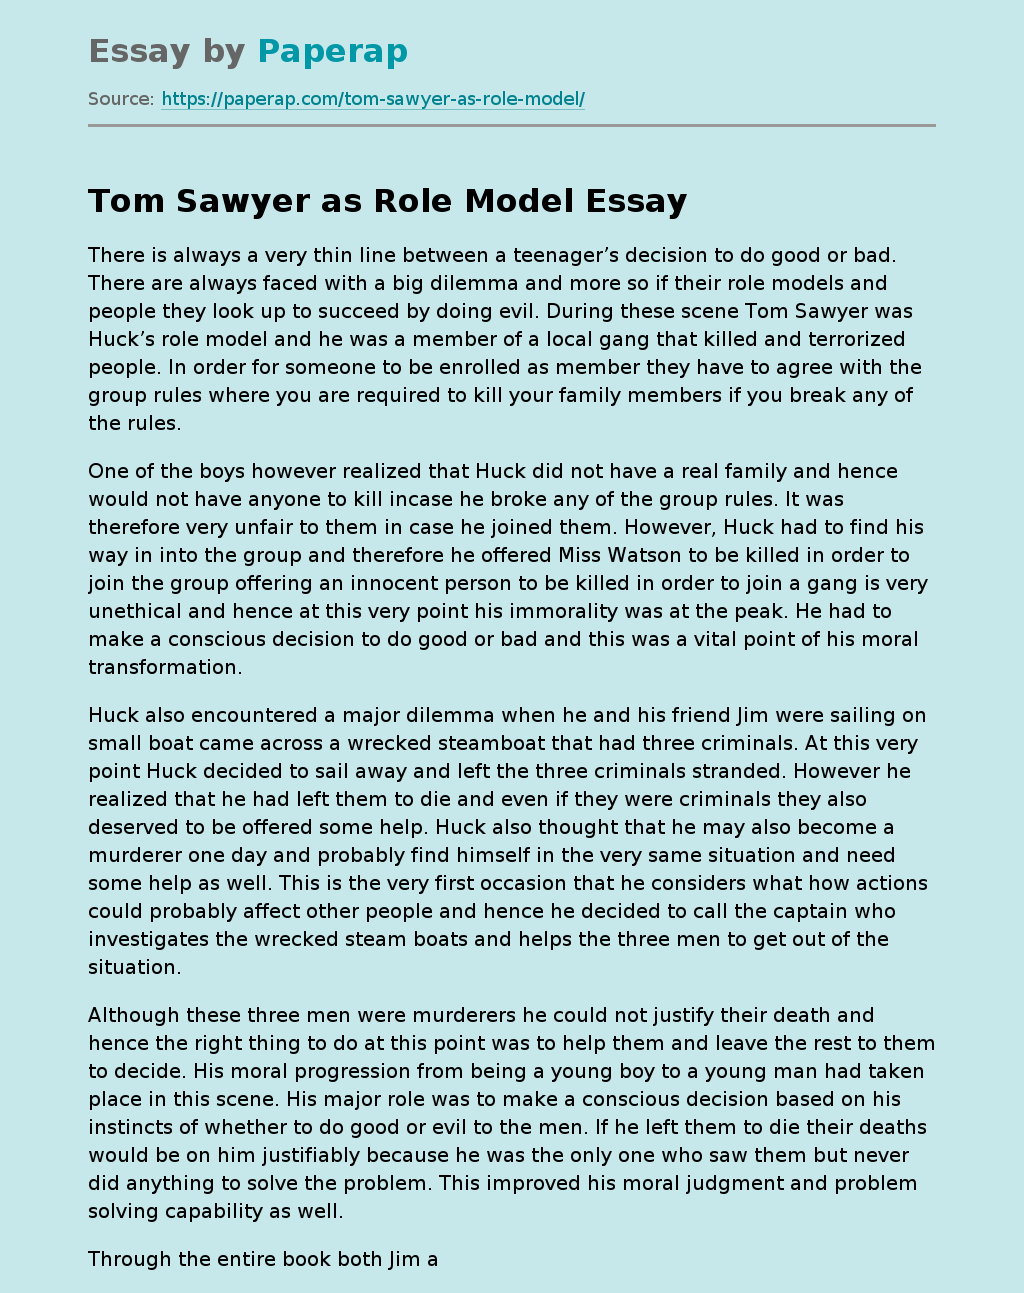 Tom Sawyer as Role Model